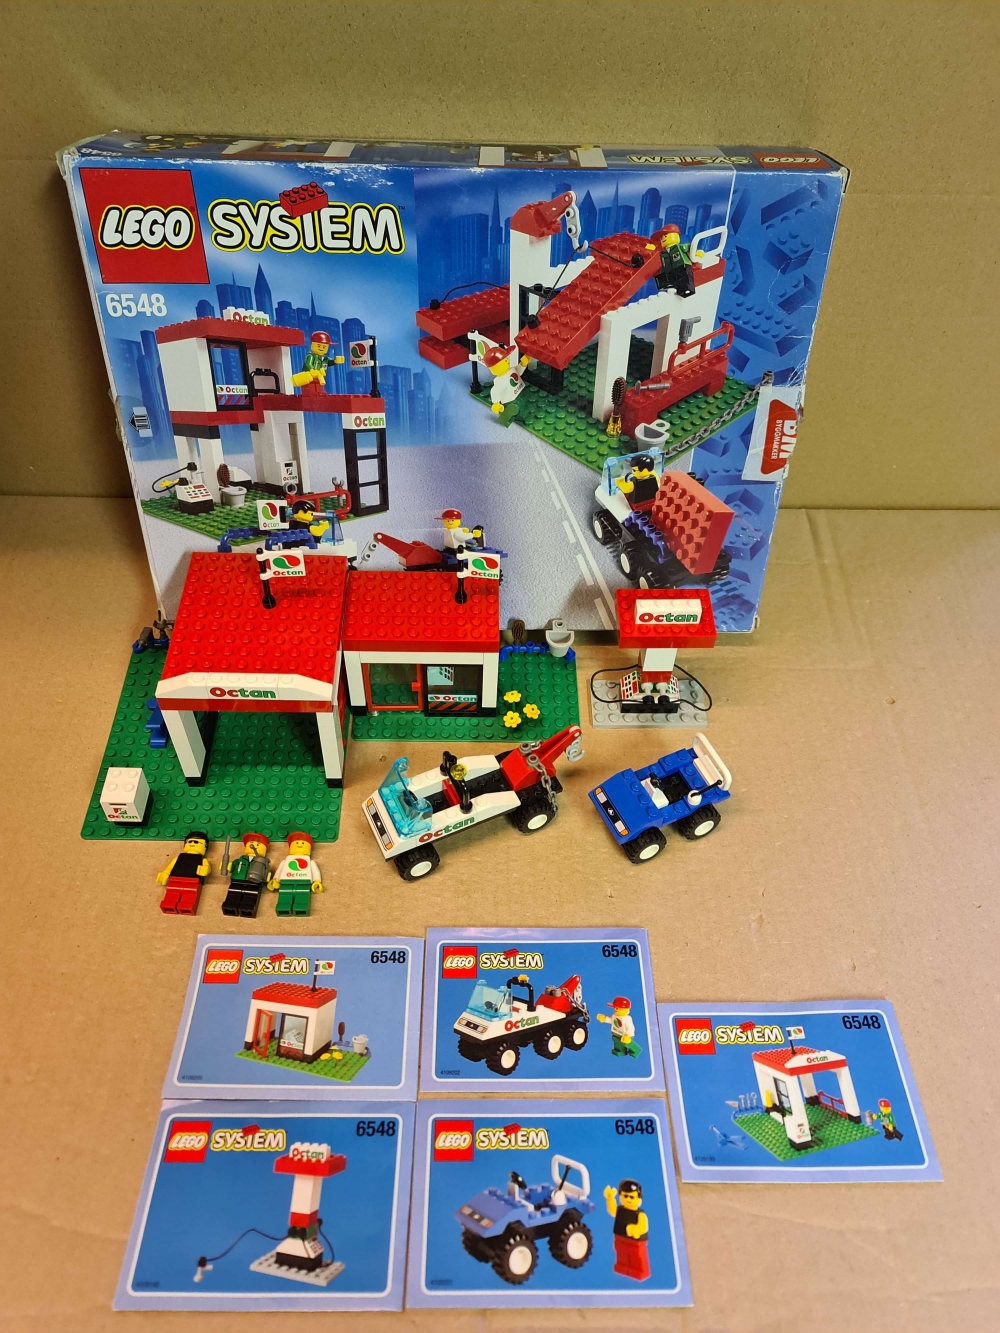 Sett 6548 fra Lego Town serien.
Meget pent. Som nytt.
Komplett med manualer og eske.